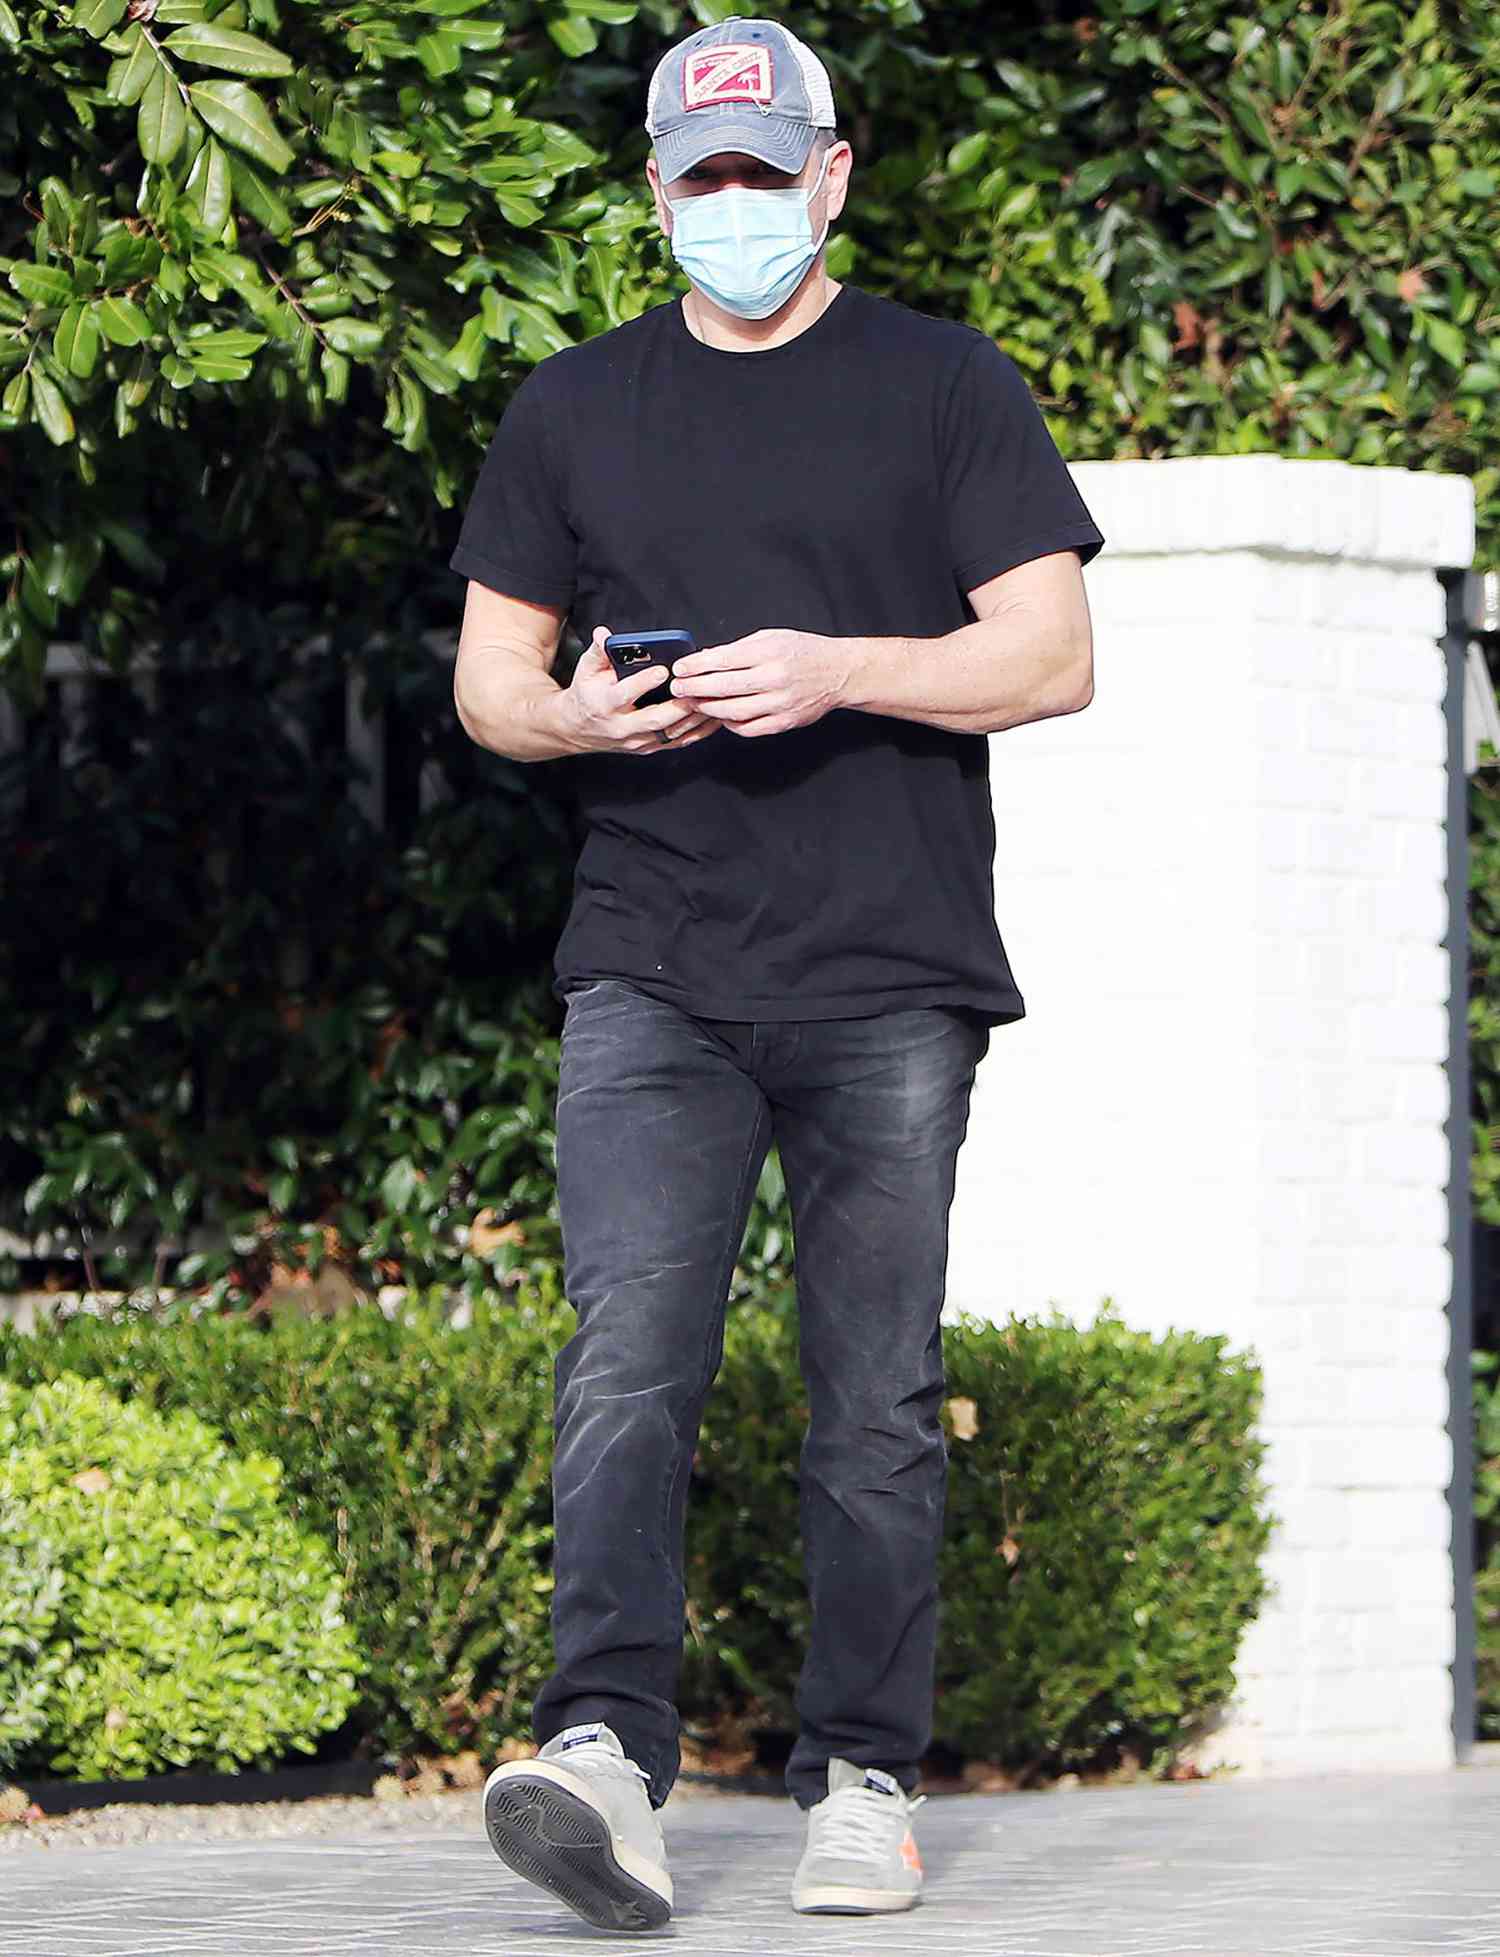 Matt Damon is seen taking a stroll